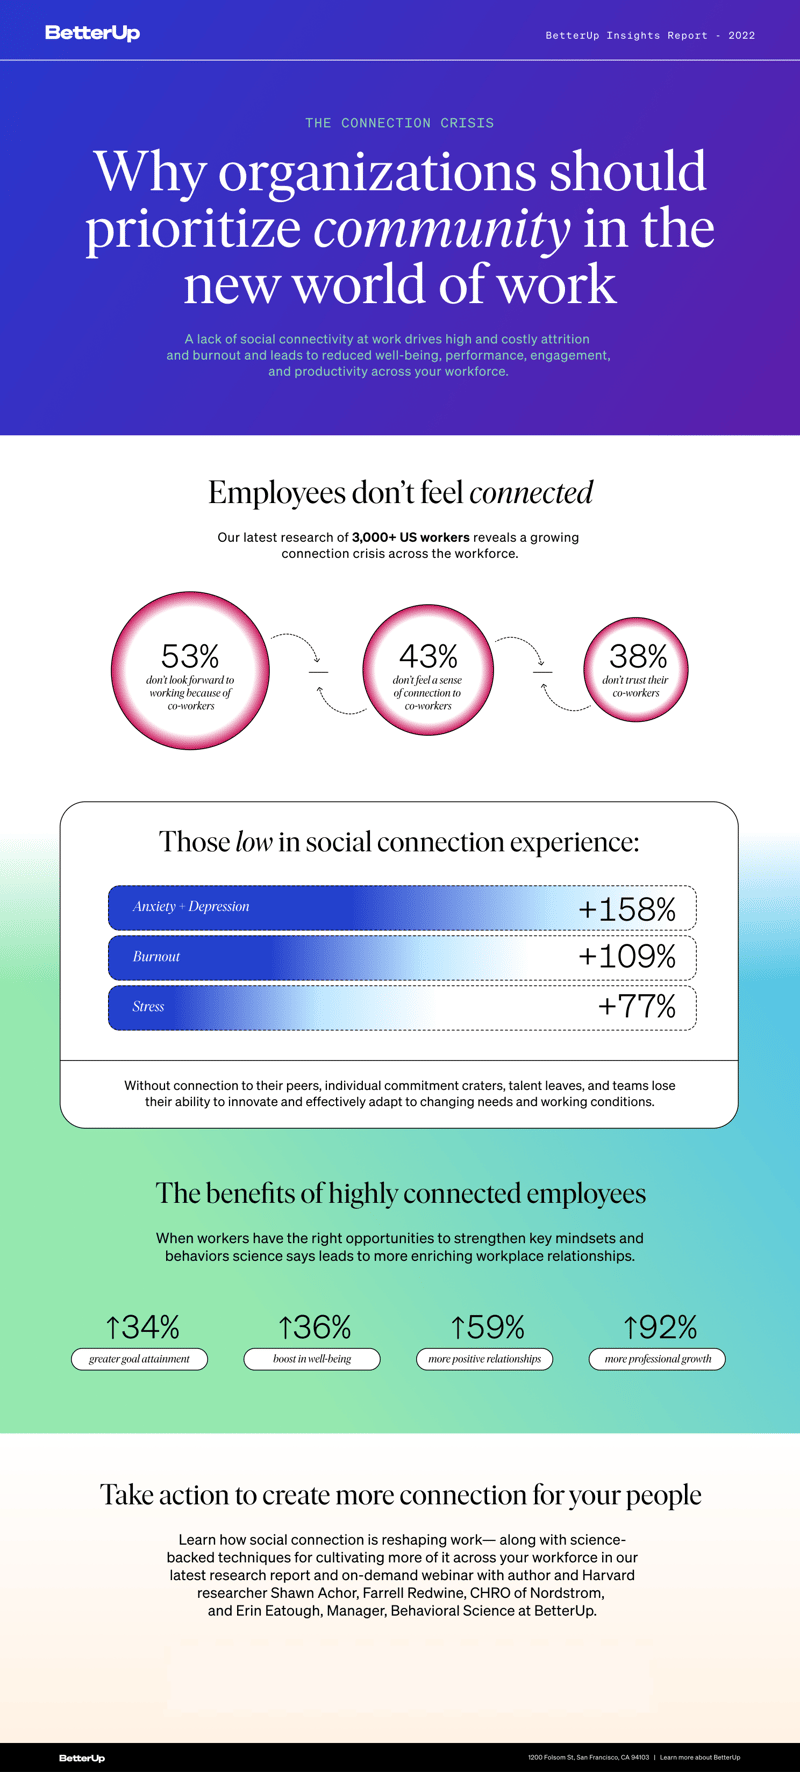 La crisis de la conexión: infografía